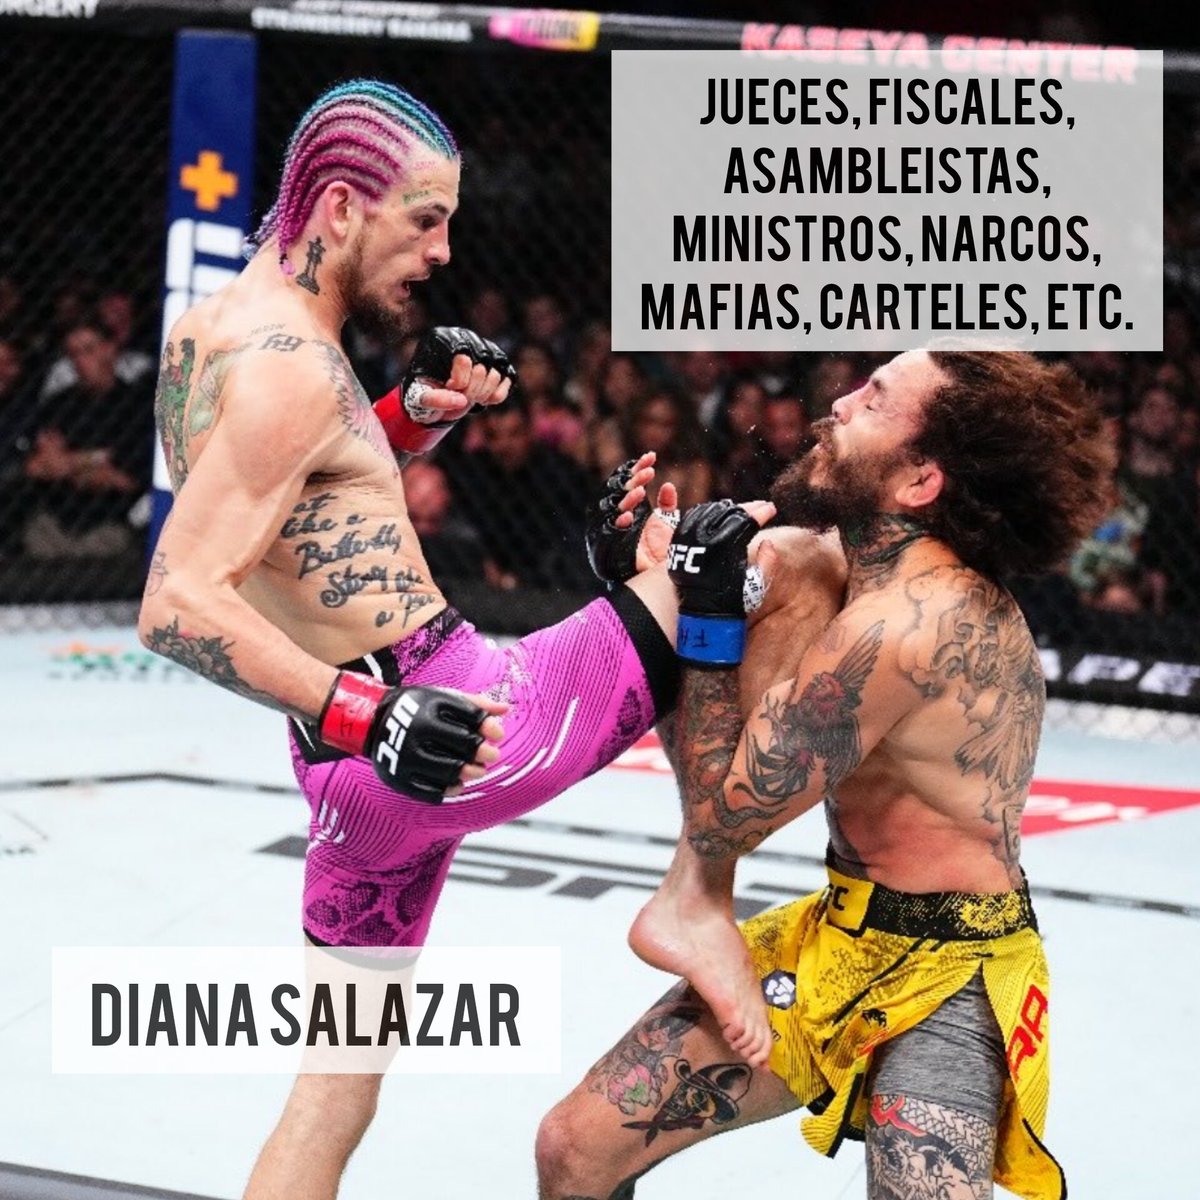 #ChitoVera #UFC299 #Quaker #EcuadorSinCorrupción #DianaSalazar #Metastasis #Purga